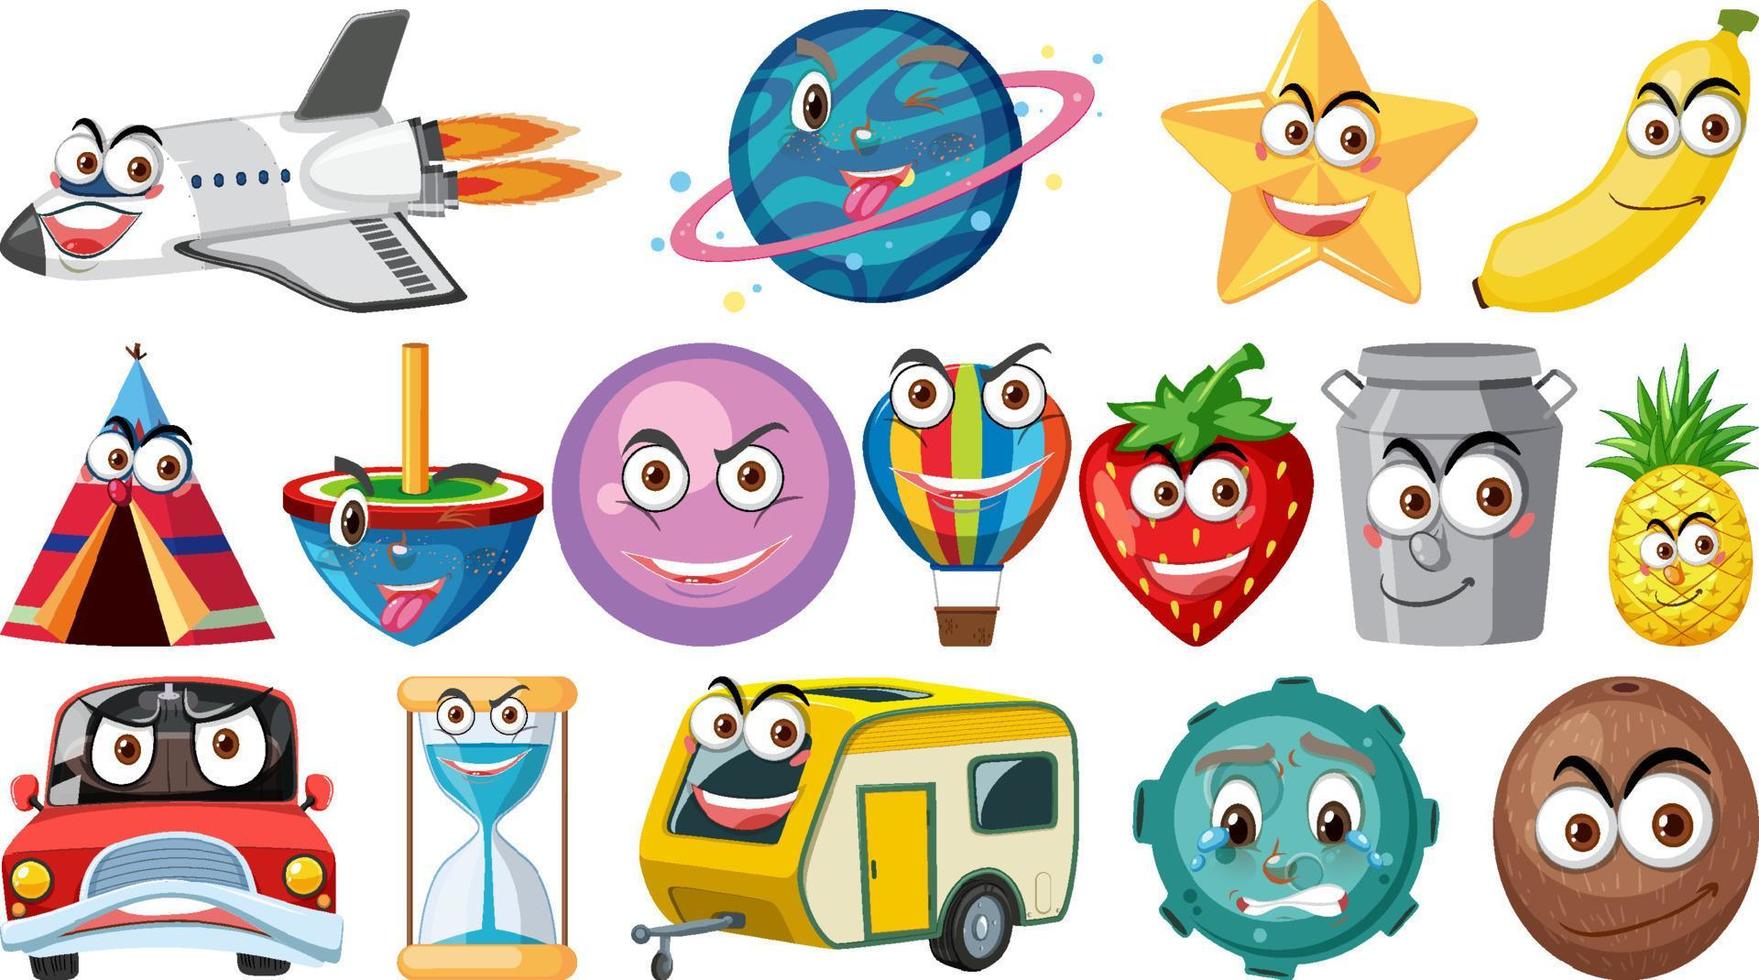 conjunto de diferentes objetos de juguete con caras sonrientes vector